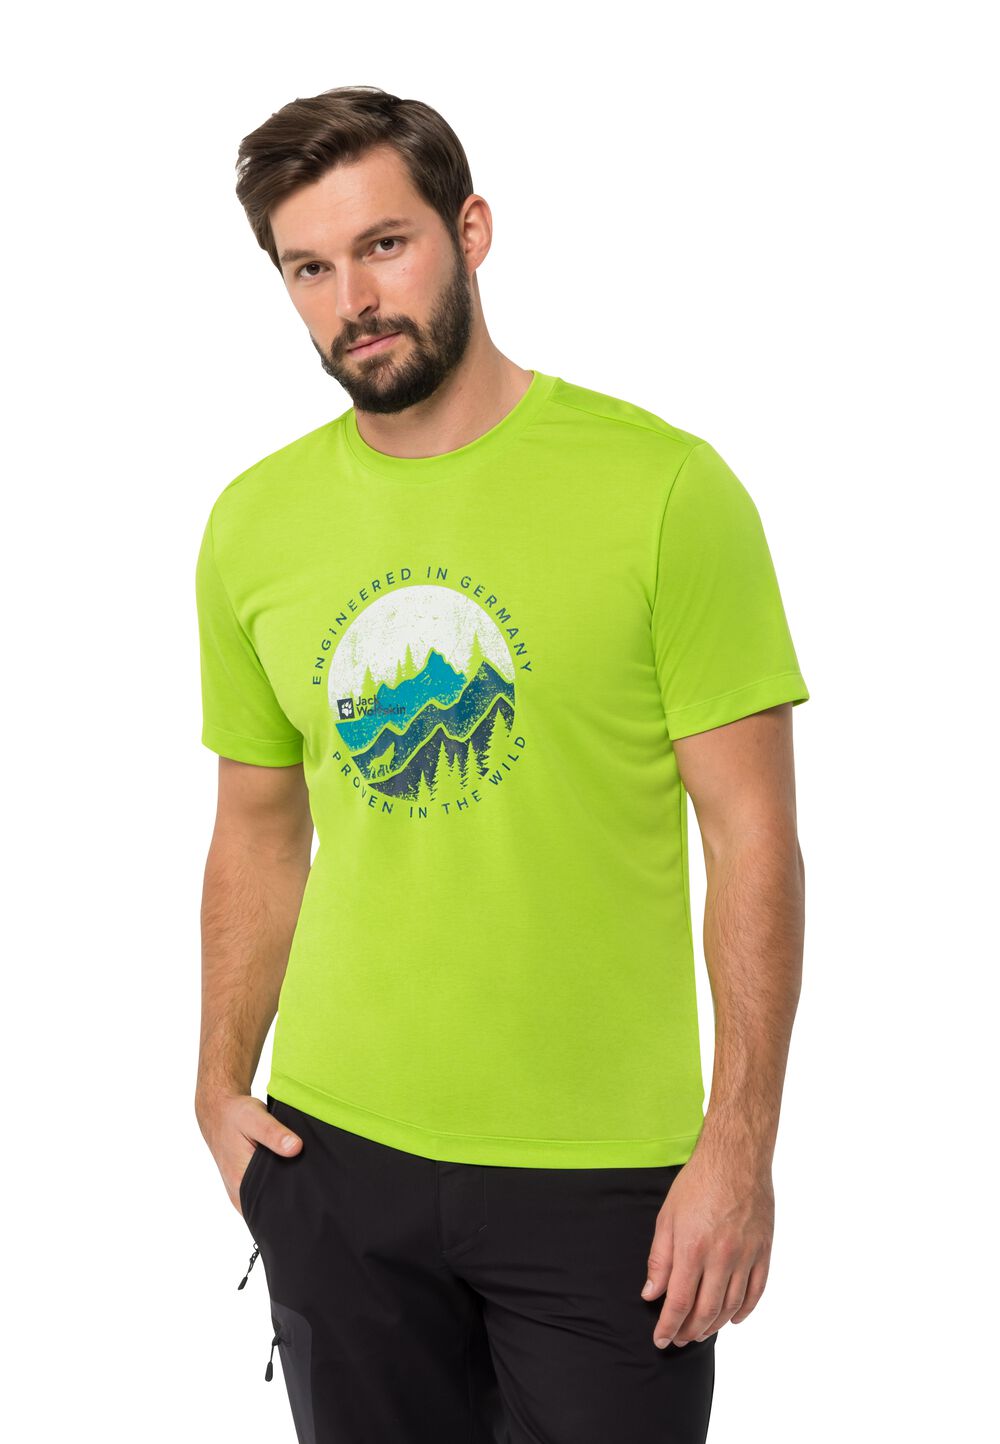 Jack Wolfskin Funktionsshirt Herren Hiking S/S Graphic T-Shirt Men S fresh green fresh green von Jack Wolfskin